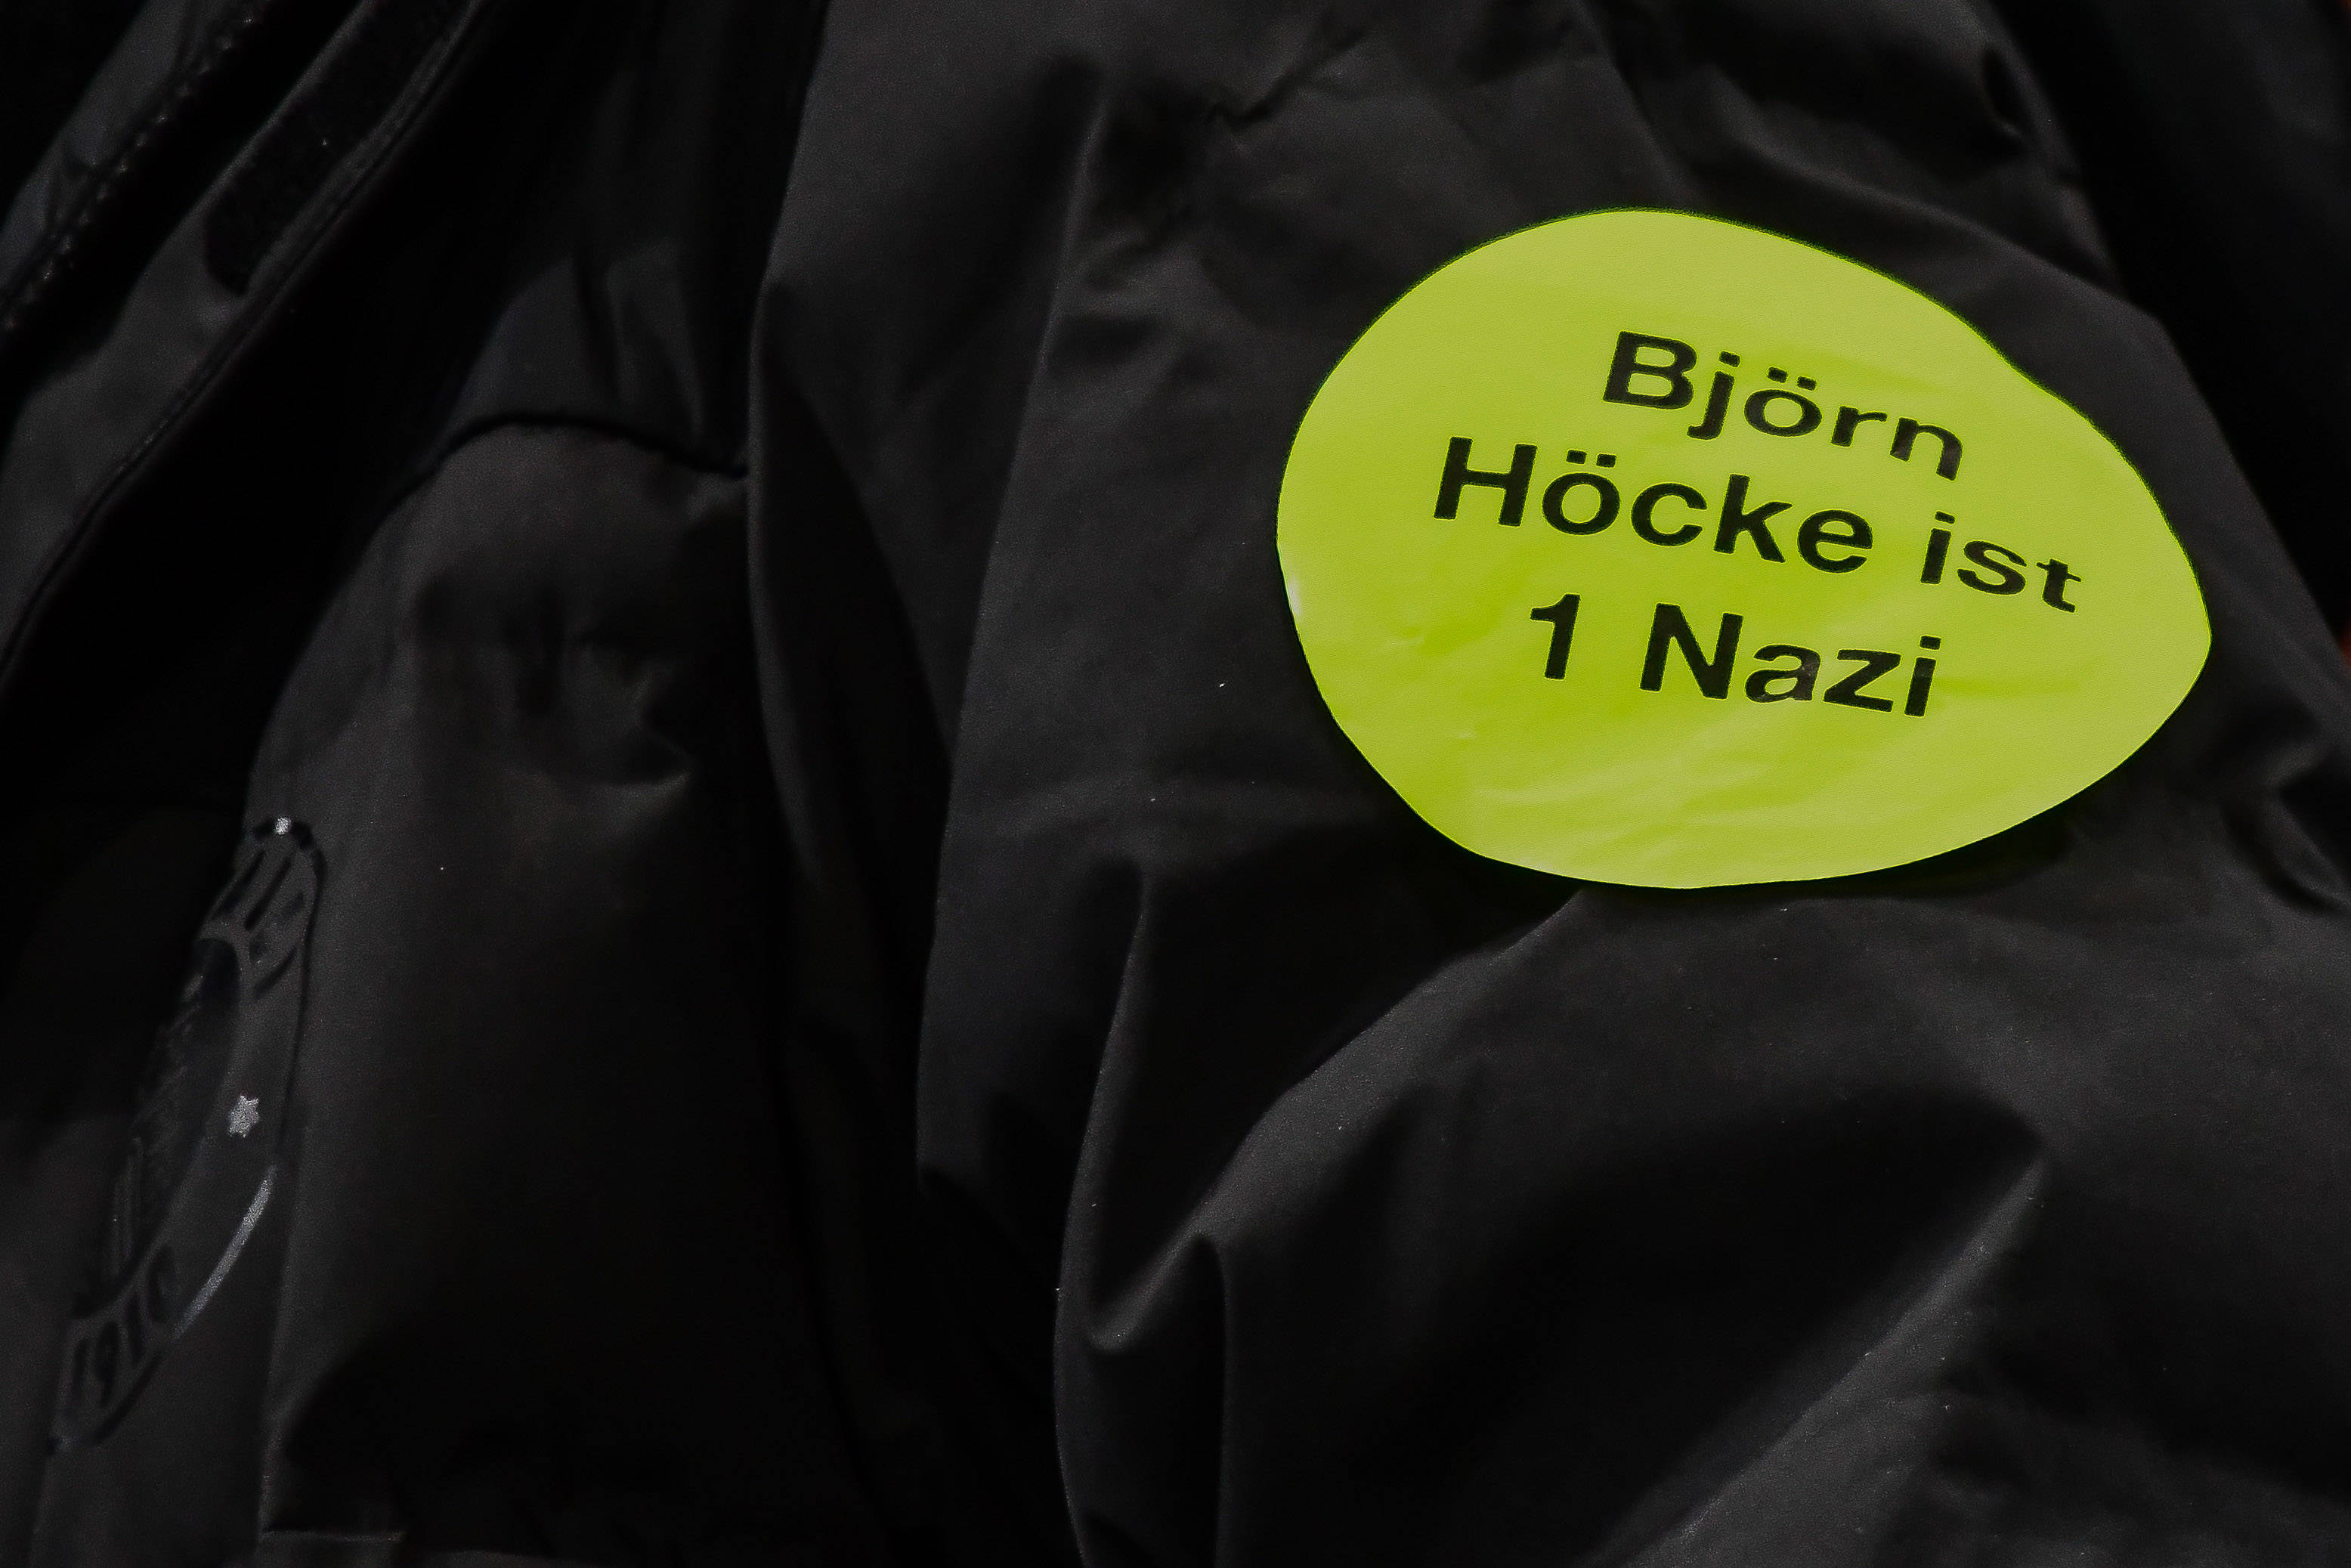 Ein Anhänger des Fußball-Zweitligisten FC St. Pauli trägt einen Aufkleber mit der Aufschrift „Björn Höcke ist 1 Nazi“ auf seiner Jacke.